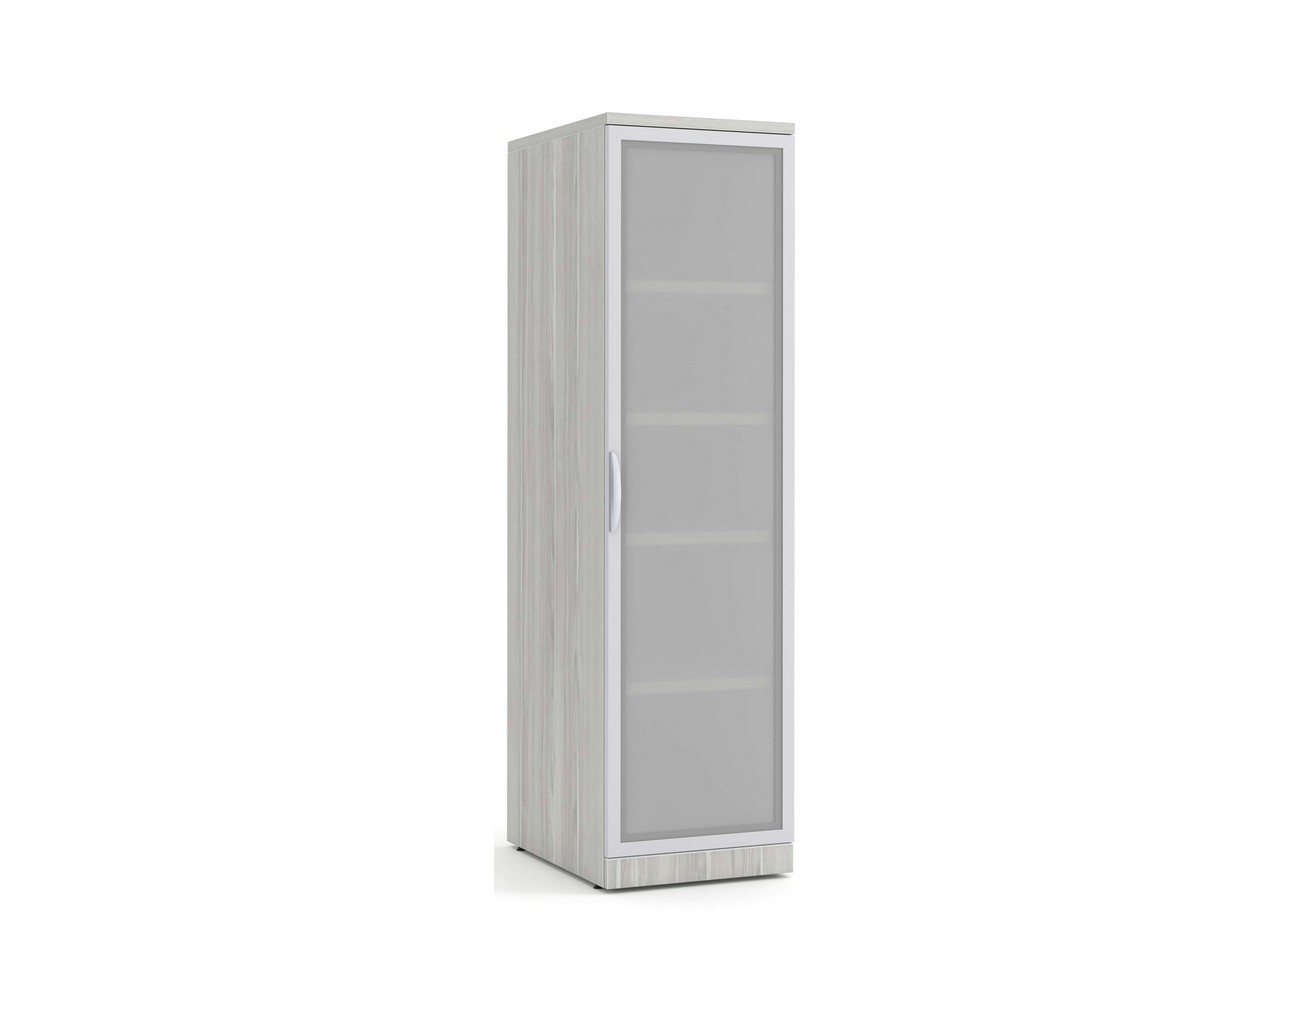 Glass Door Office Locker Storage Cabinet with Silver Birch Finish